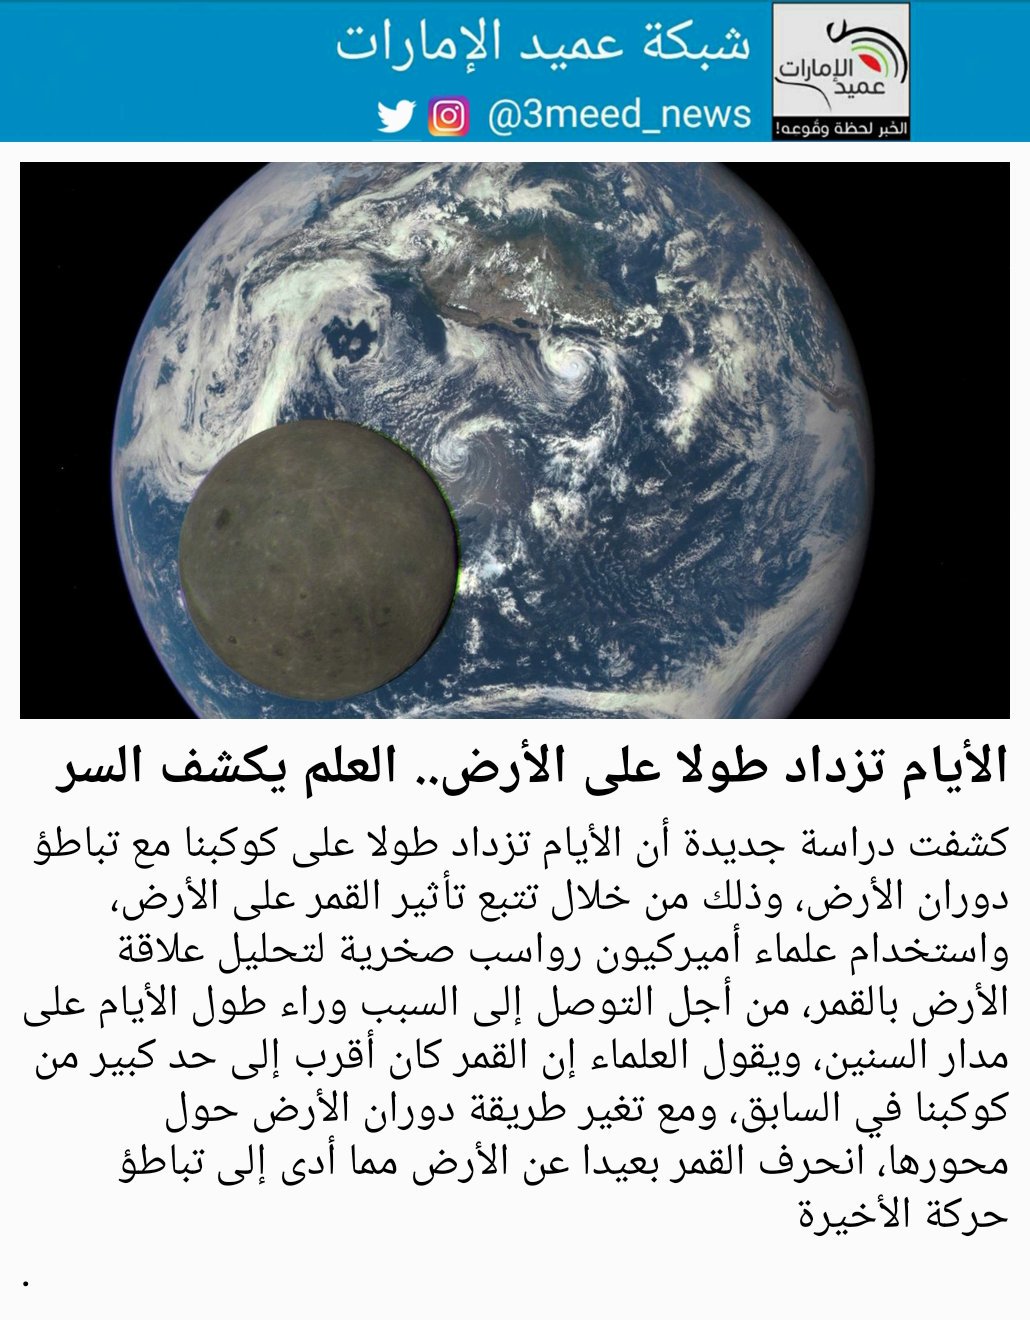 القمر أكبر من الأرض